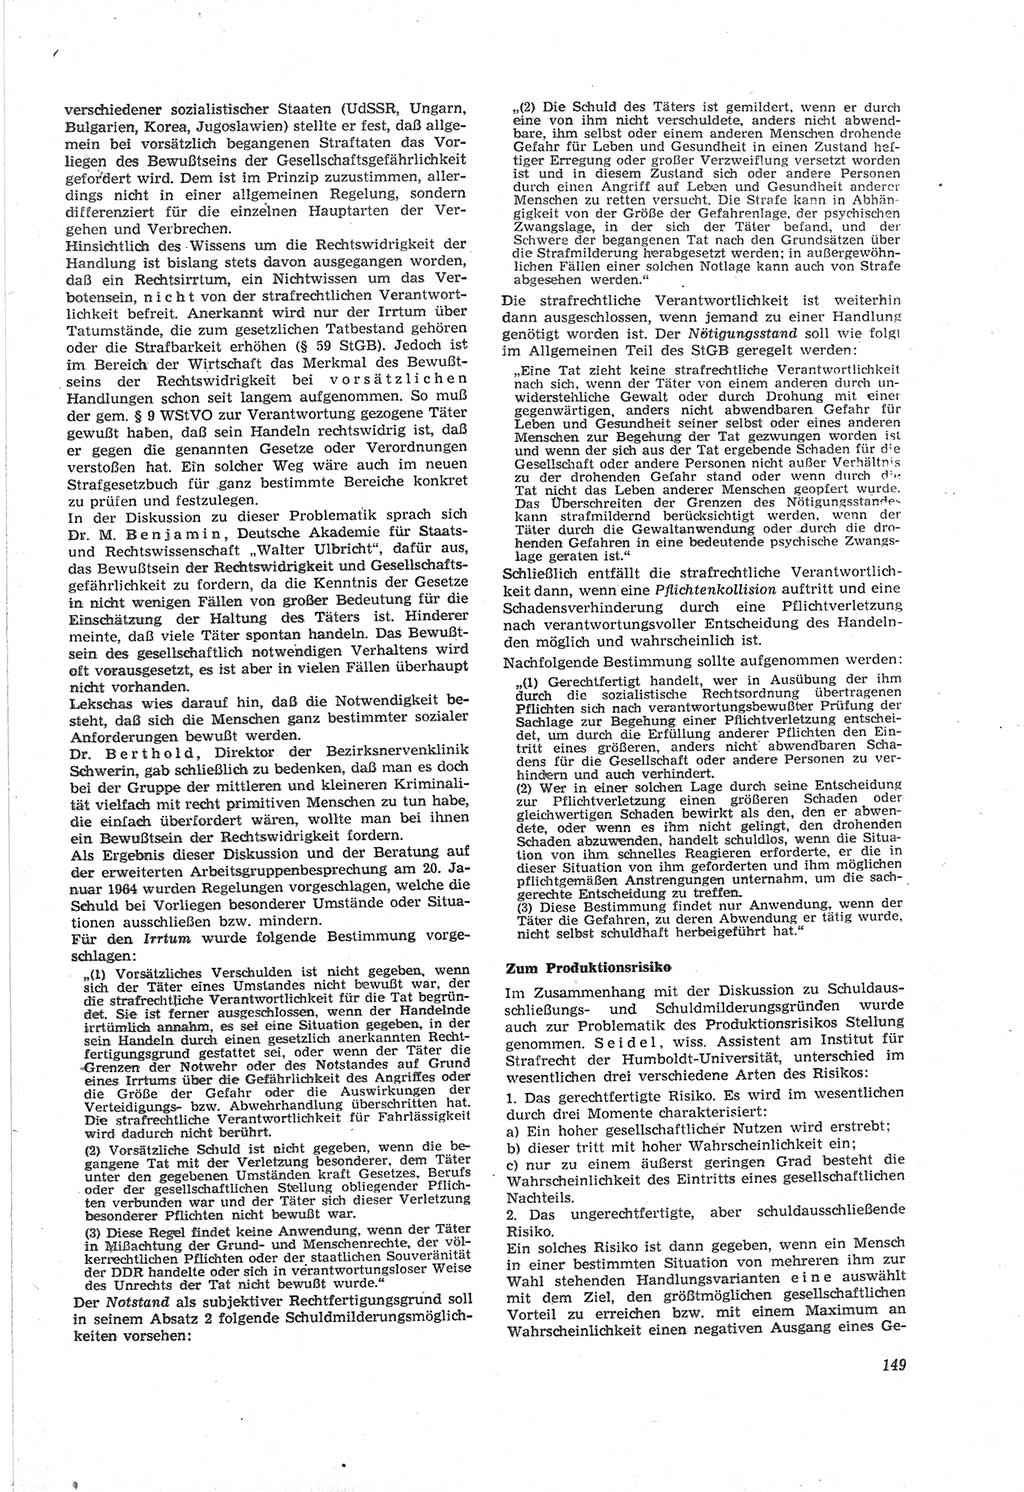 Neue Justiz (NJ), Zeitschrift für Recht und Rechtswissenschaft [Deutsche Demokratische Republik (DDR)], 18. Jahrgang 1964, Seite 149 (NJ DDR 1964, S. 149)